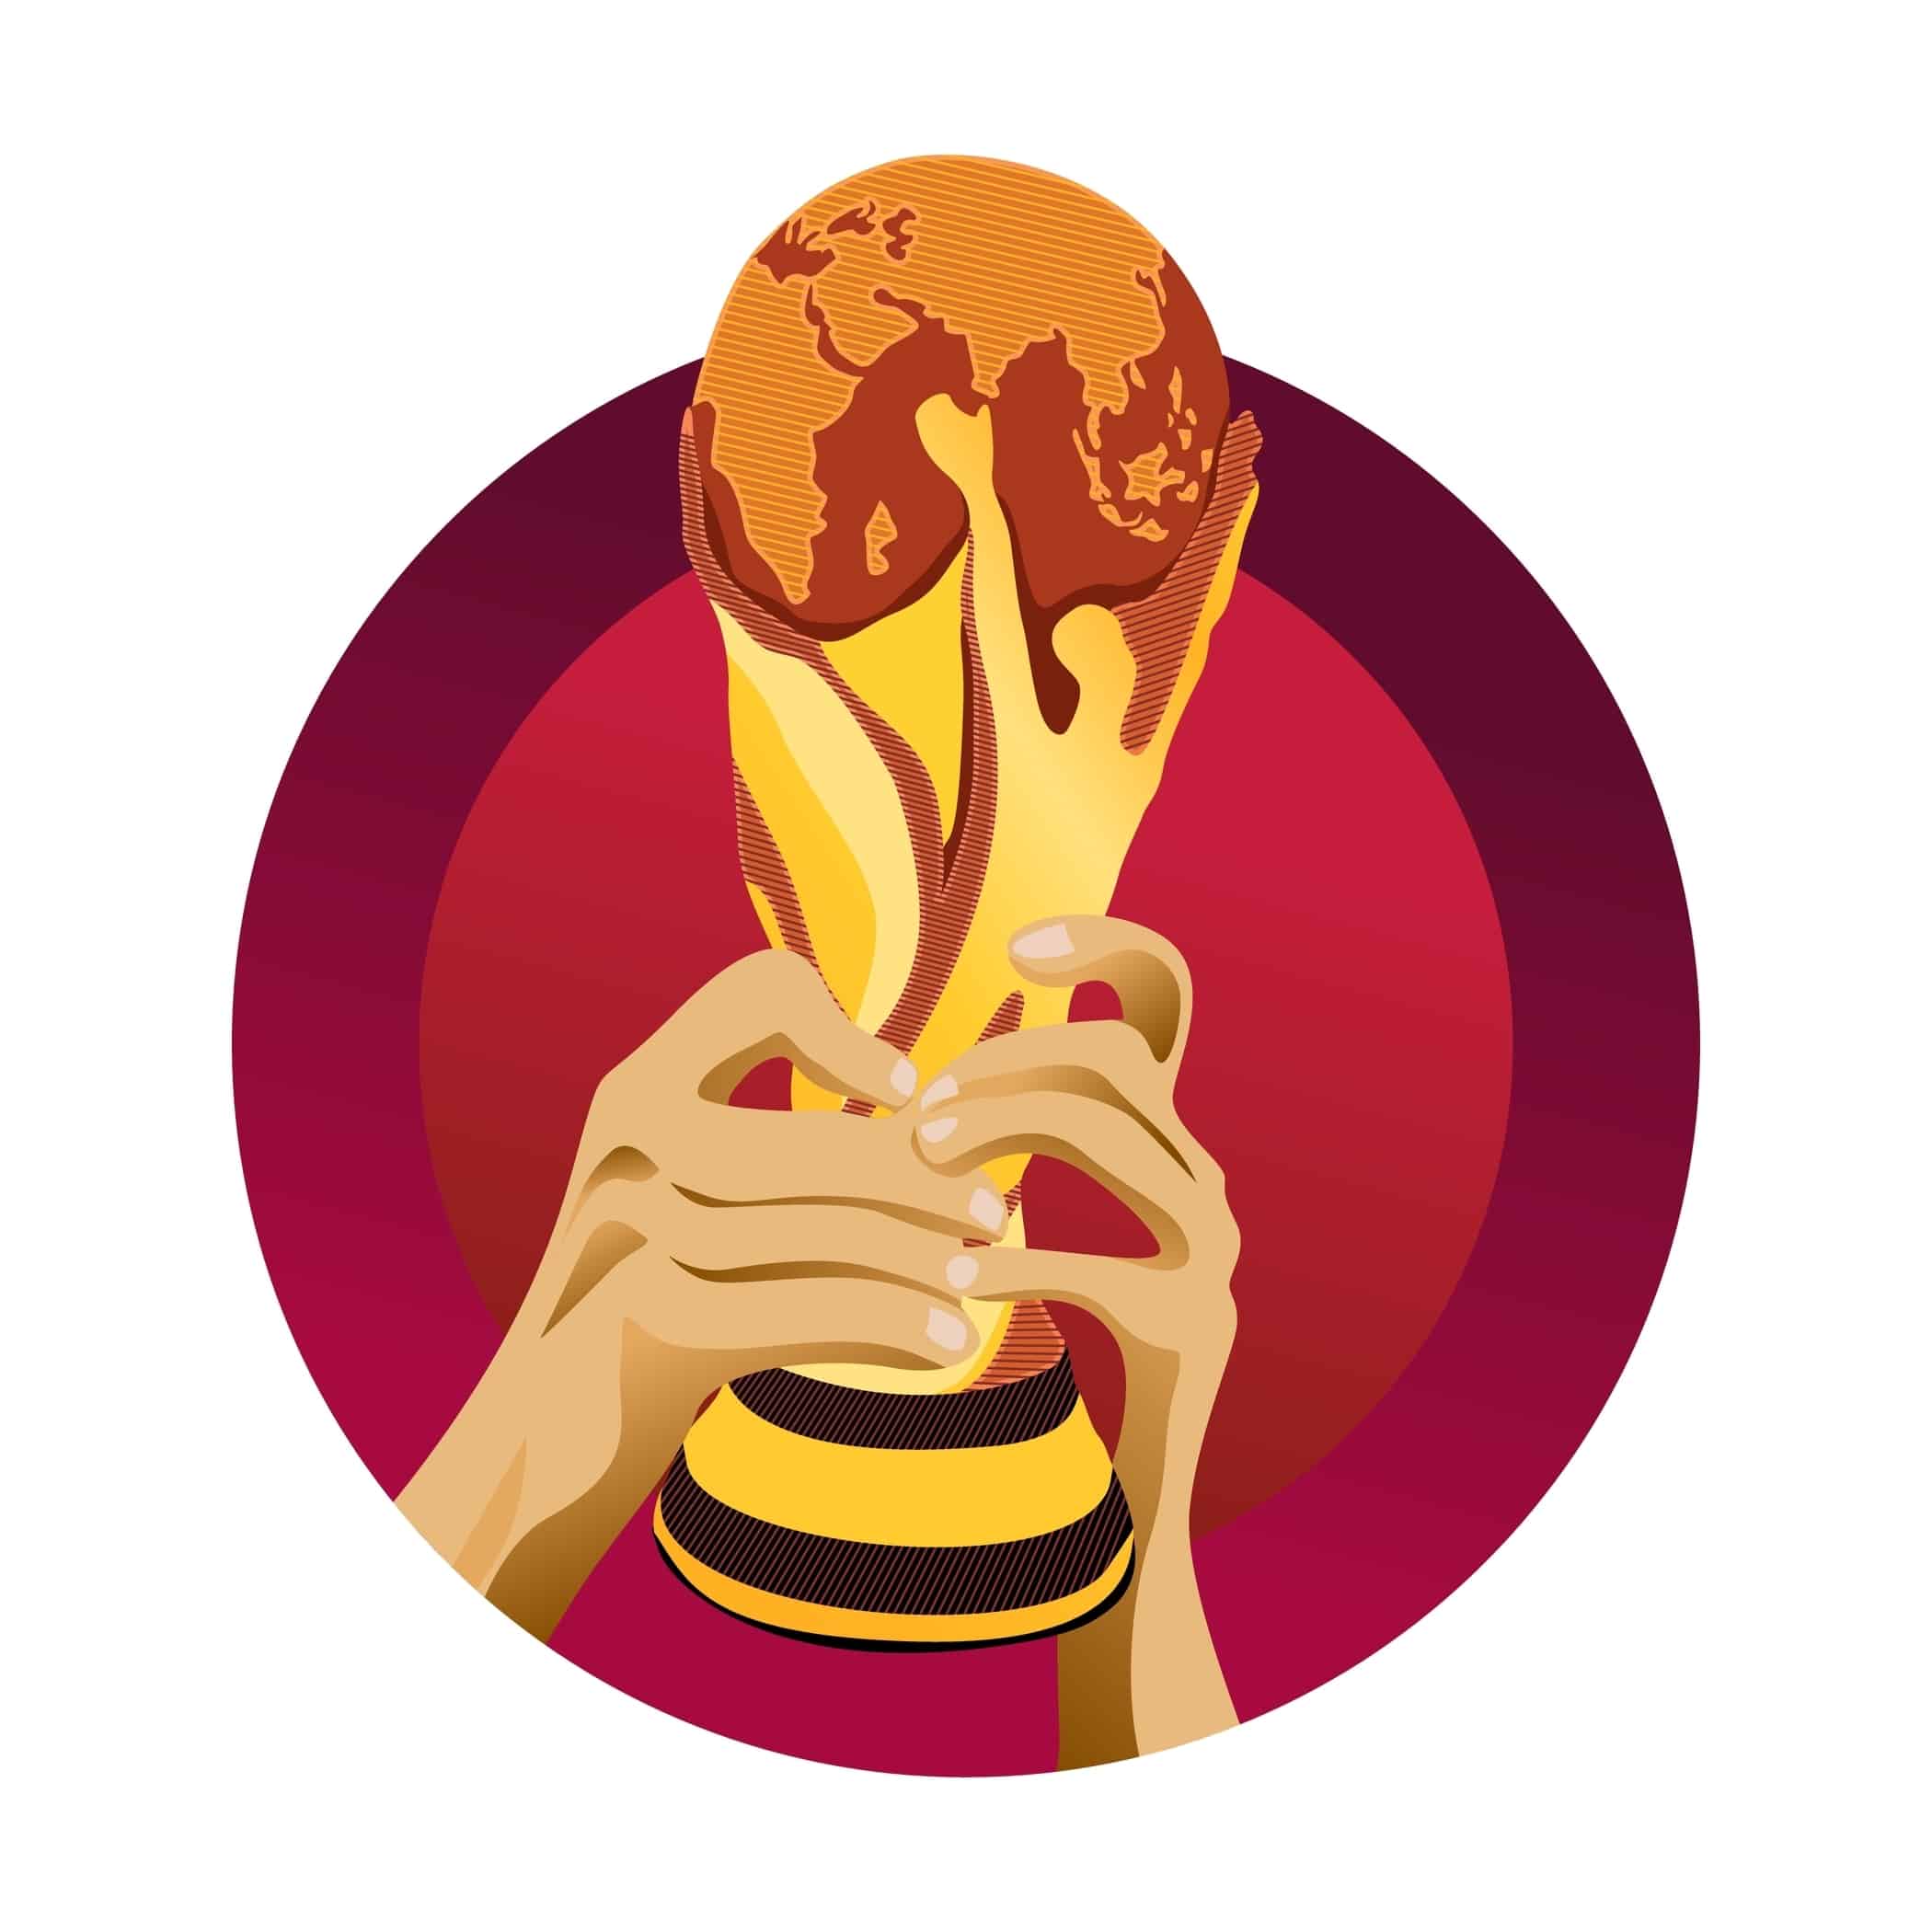 OneLove op het WK voetbal: symboolpolitiek of statement?